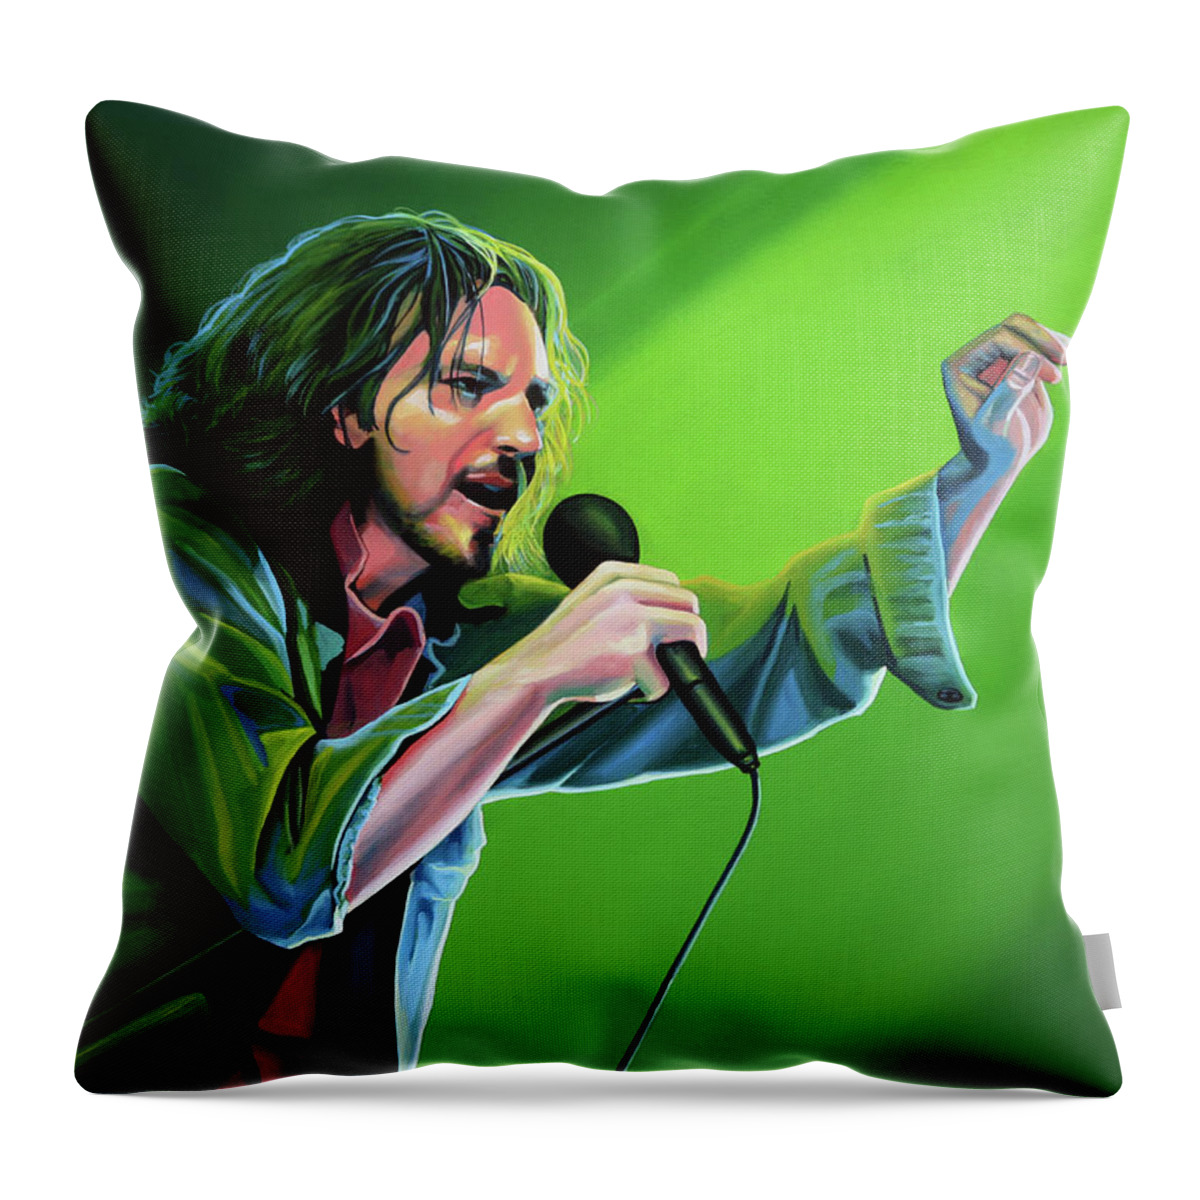 Eddie Vedder Throw Pillow featuring the painting Eddie Vedder Painting by Paul Meijering